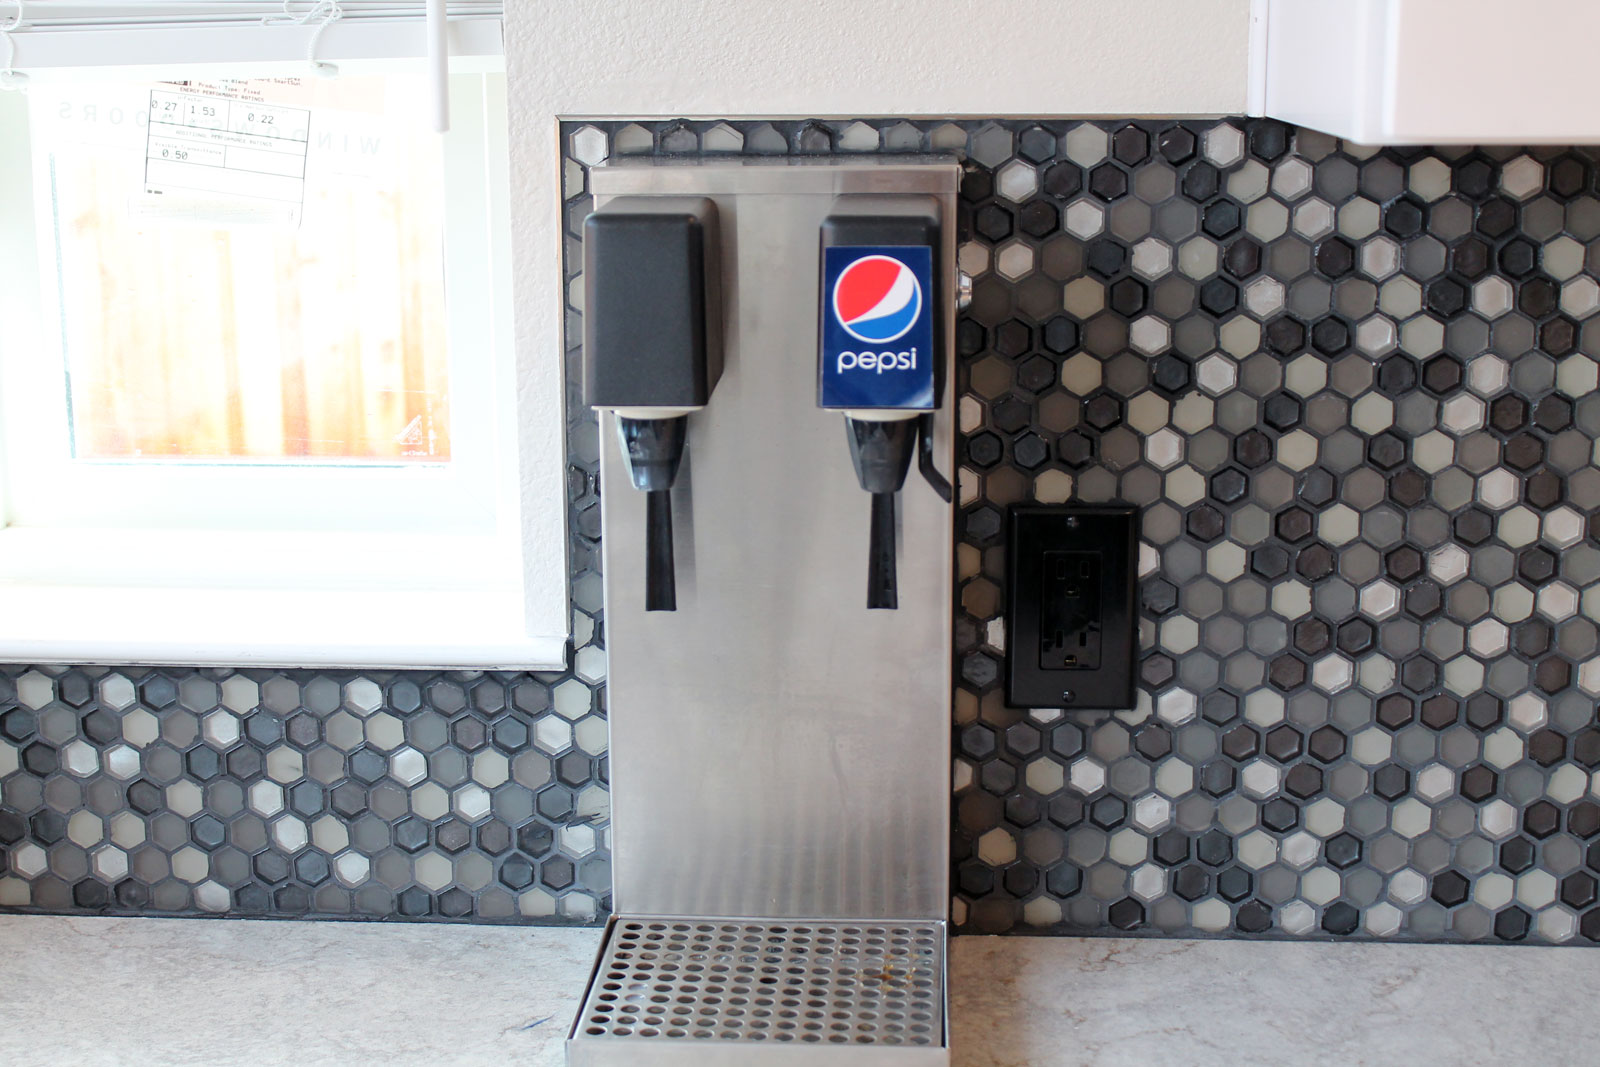 Pepsi dispenser installed by Prestige Homes & Remodel in Santa Rosa, CA.